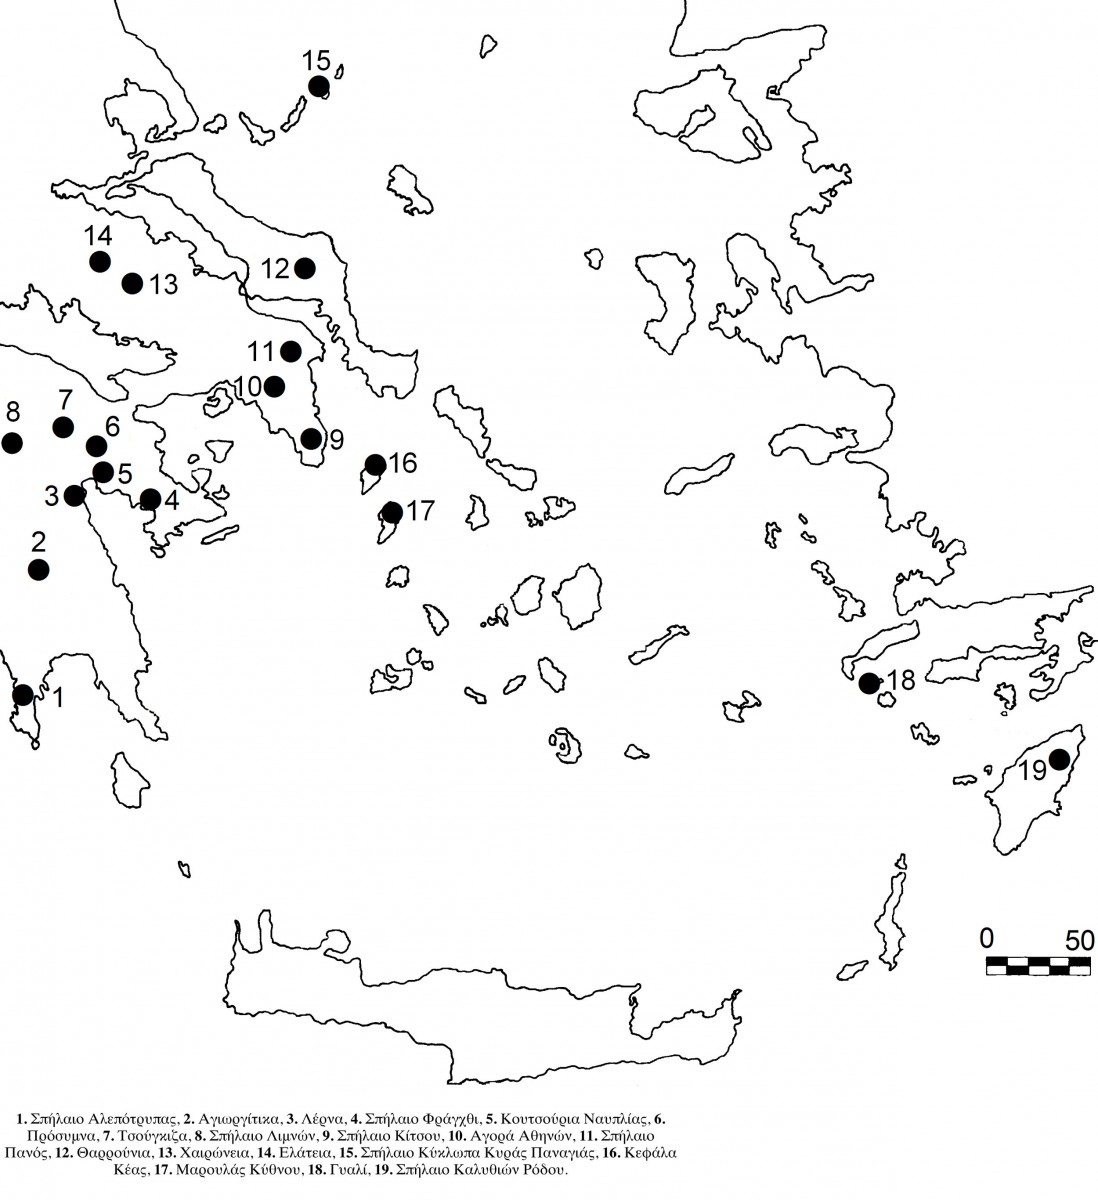 Εικ. 1. Χάρτης νότιας Ελλάδας με τις θέσεις των μεσολιθικών και νεολιθικών νεκροταφείων (σχεδίαση Μ. Γεωργιάδης).